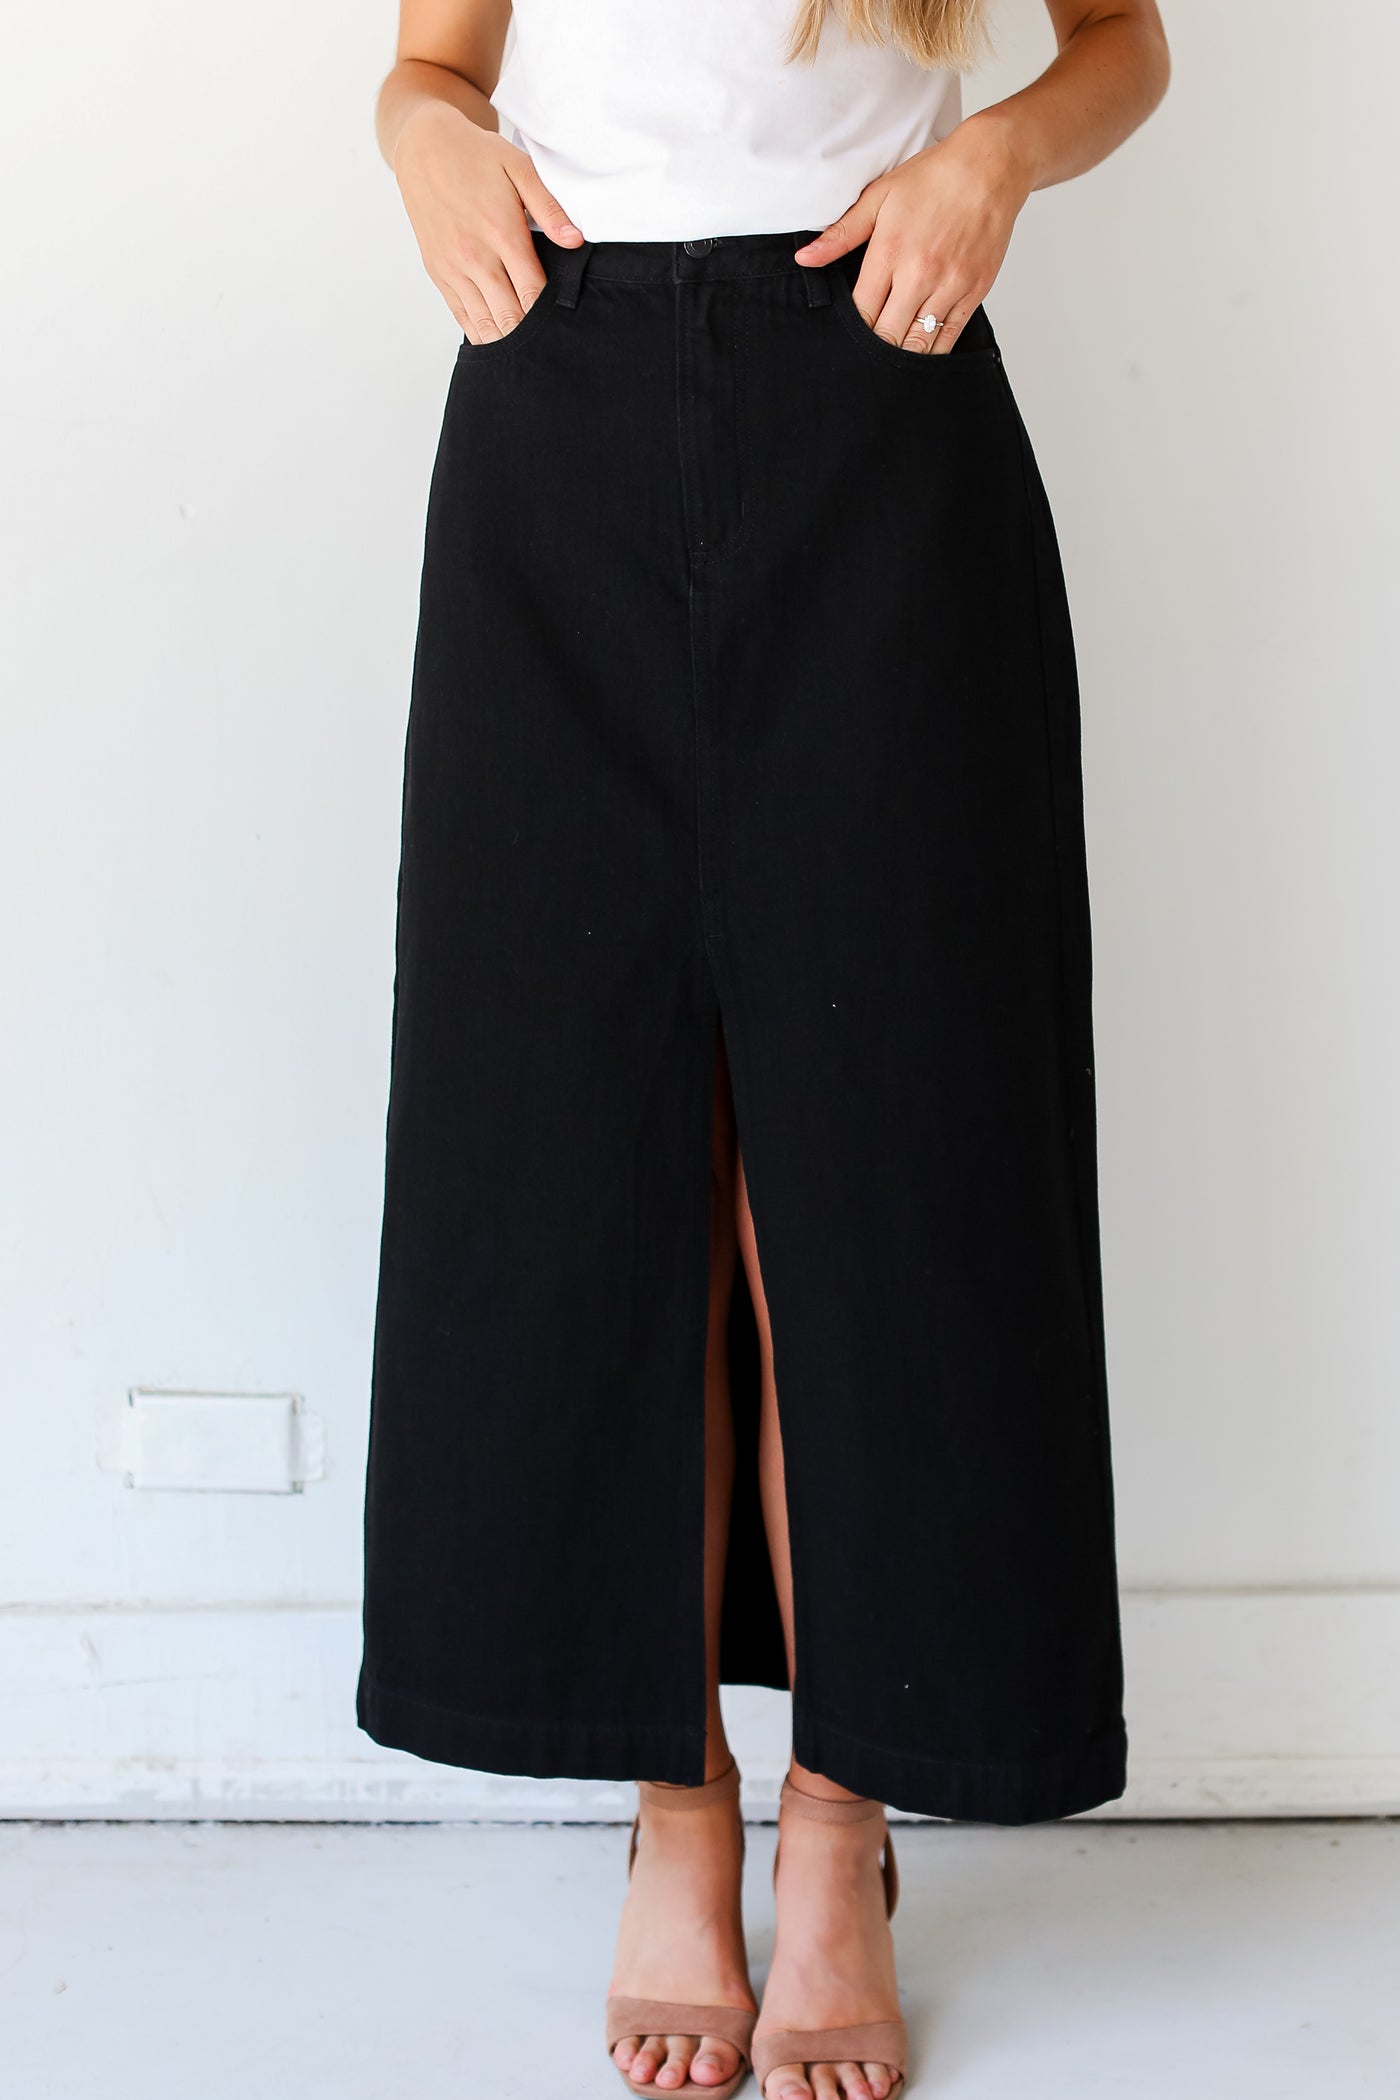 Black Denim Maxi Skirt on dress up model